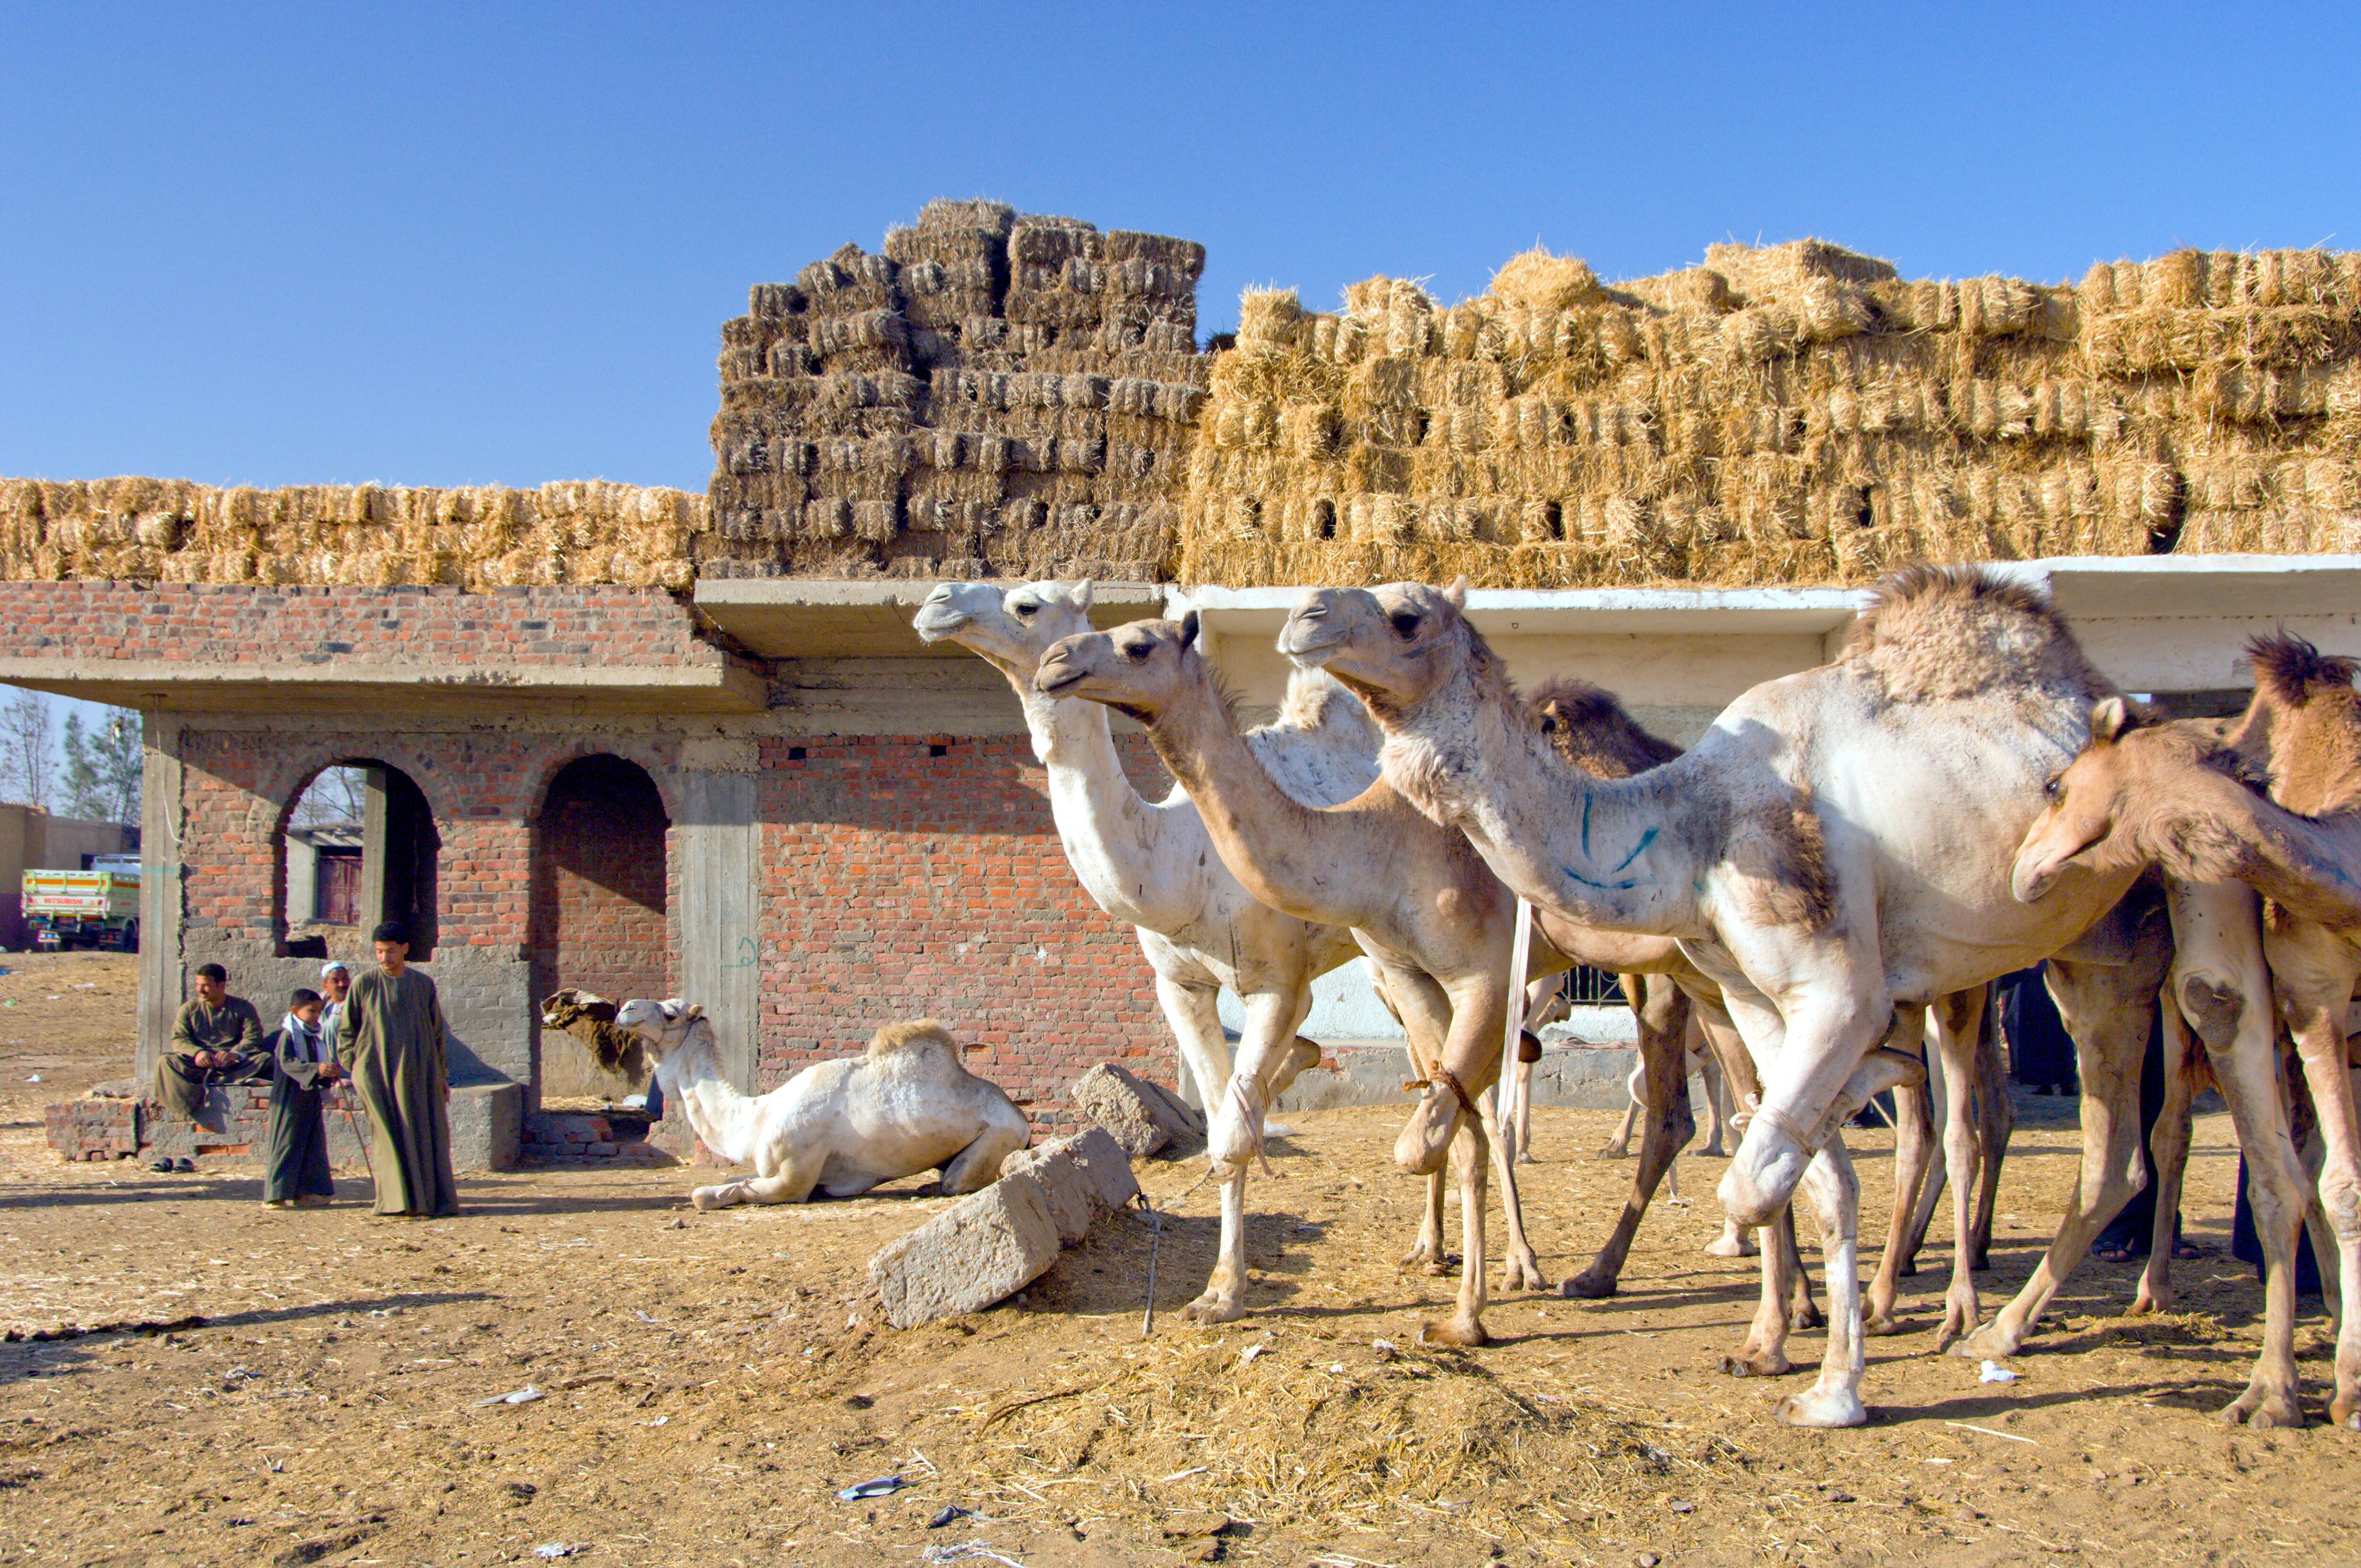 El mercado de camellos de Birqash.